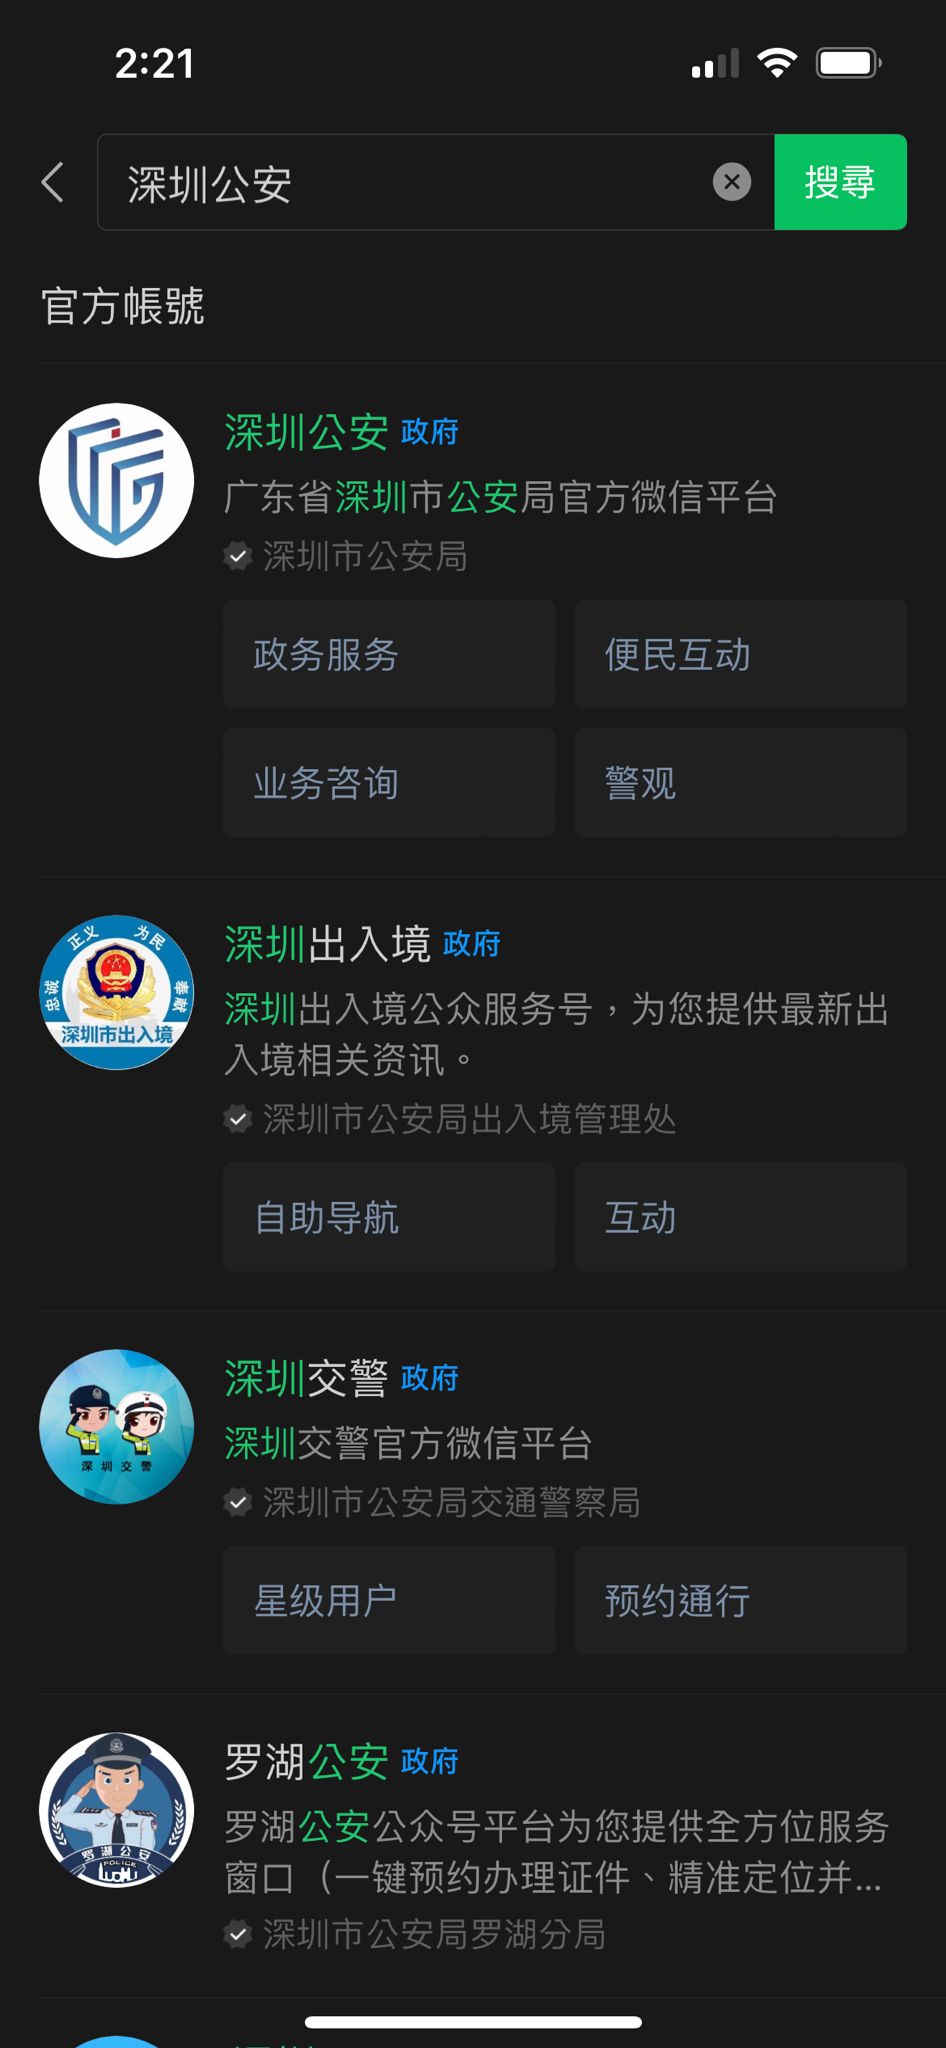 在微信中搜寻「深圳公安公众号」。微信撷图